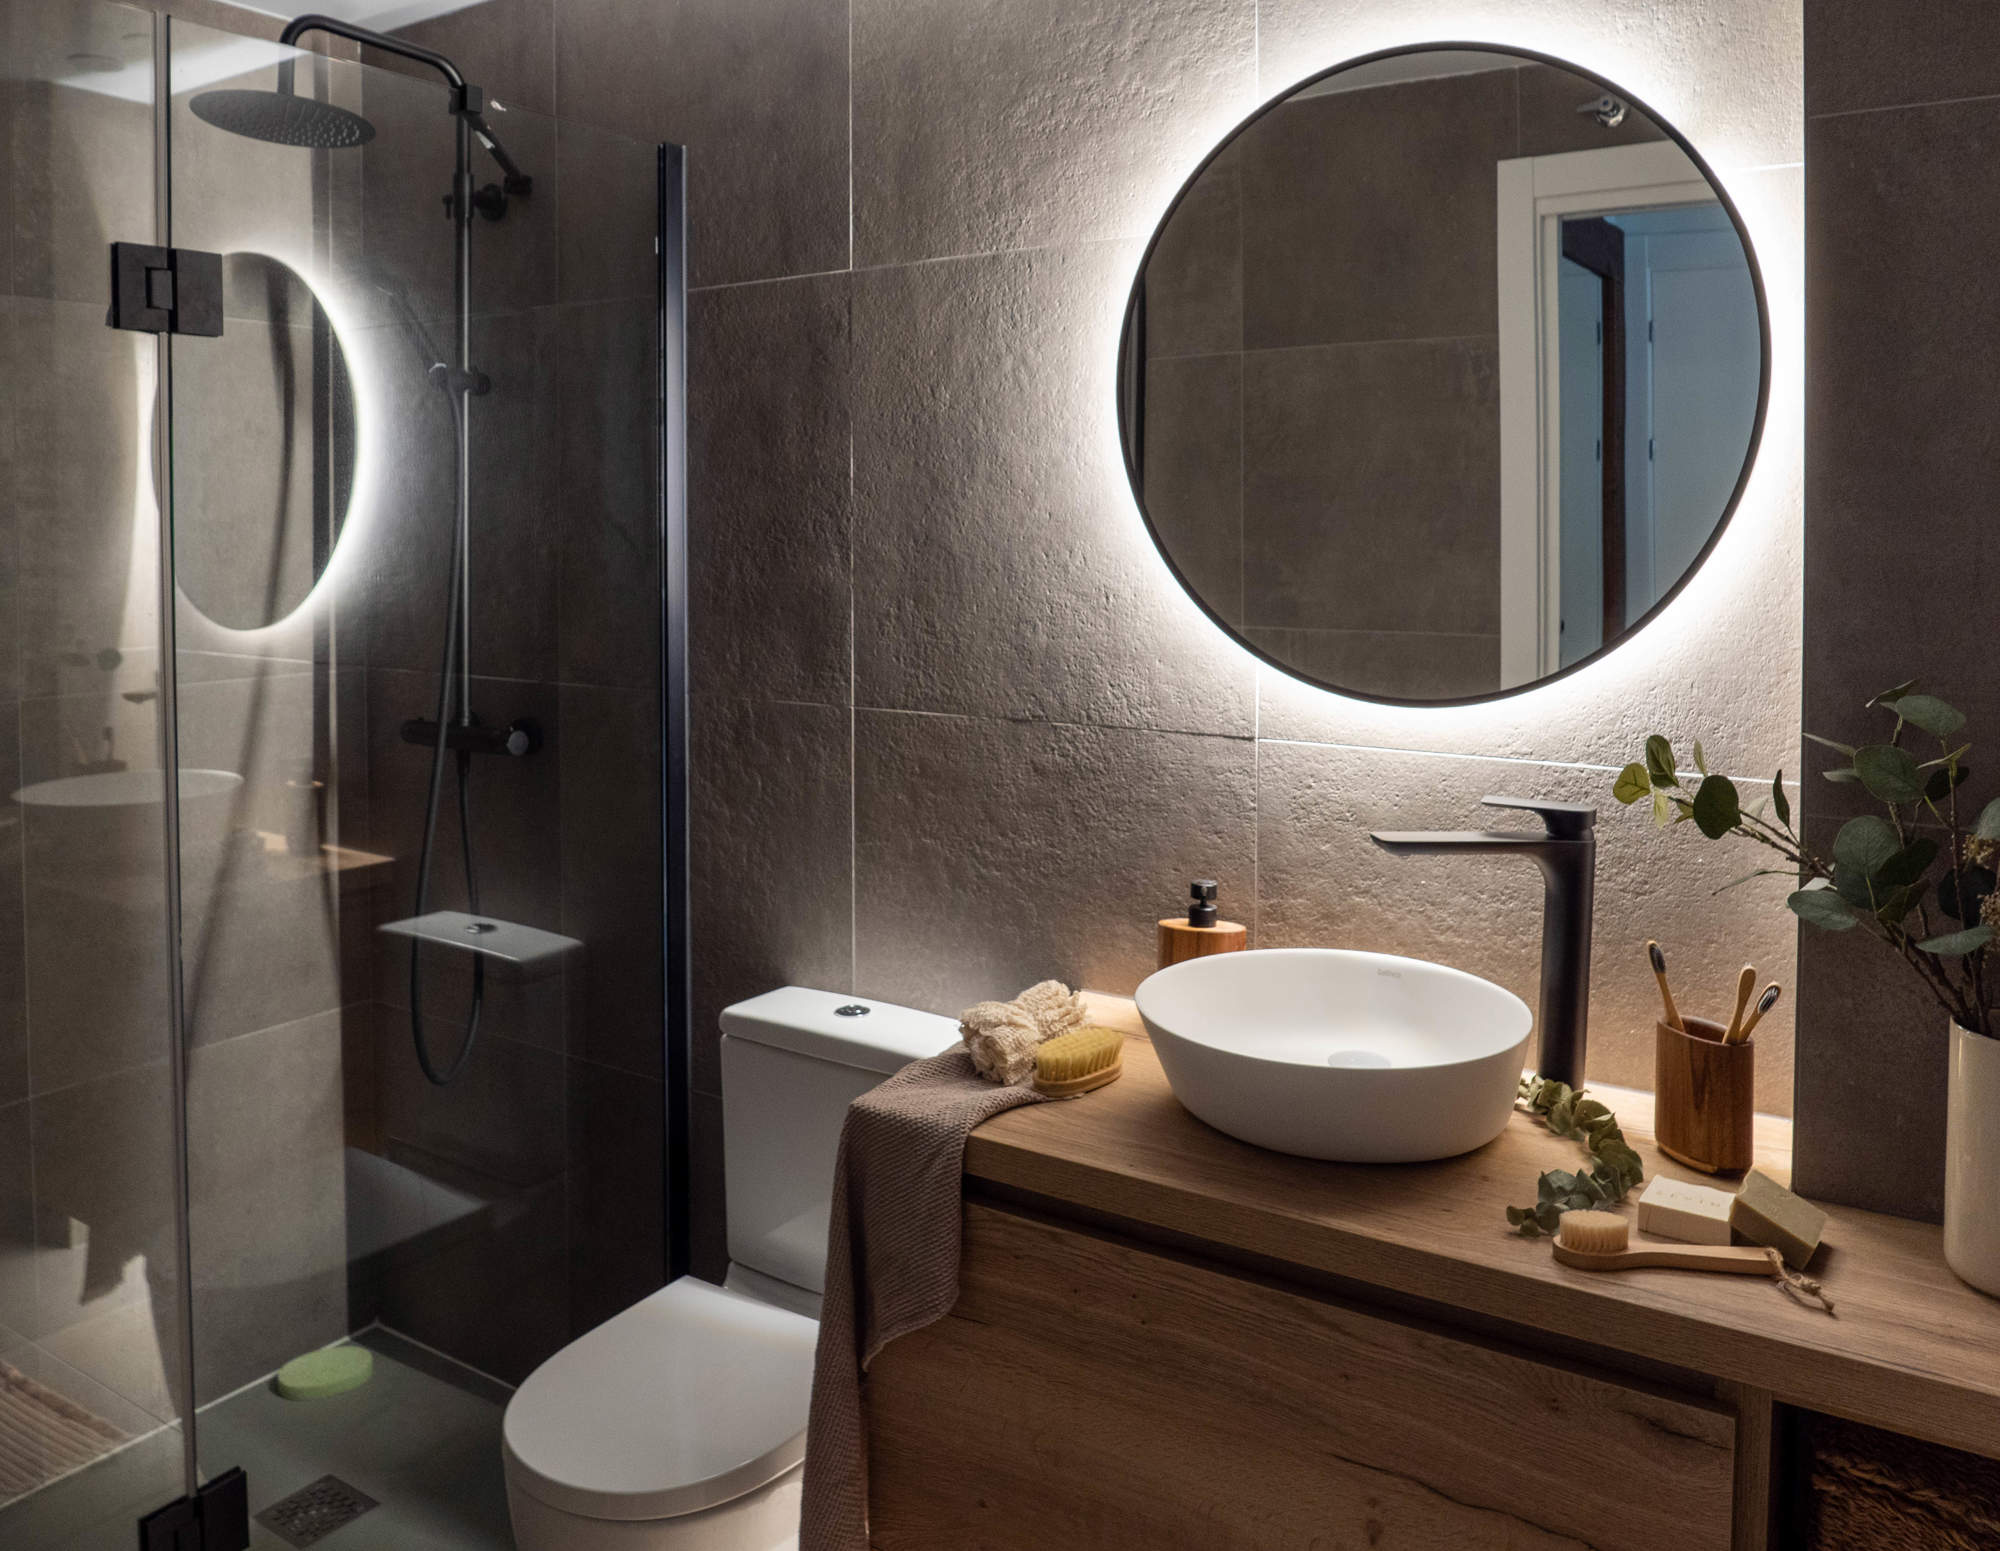 Baño con espejo redondo iluminado, ducha y mueble de madera.